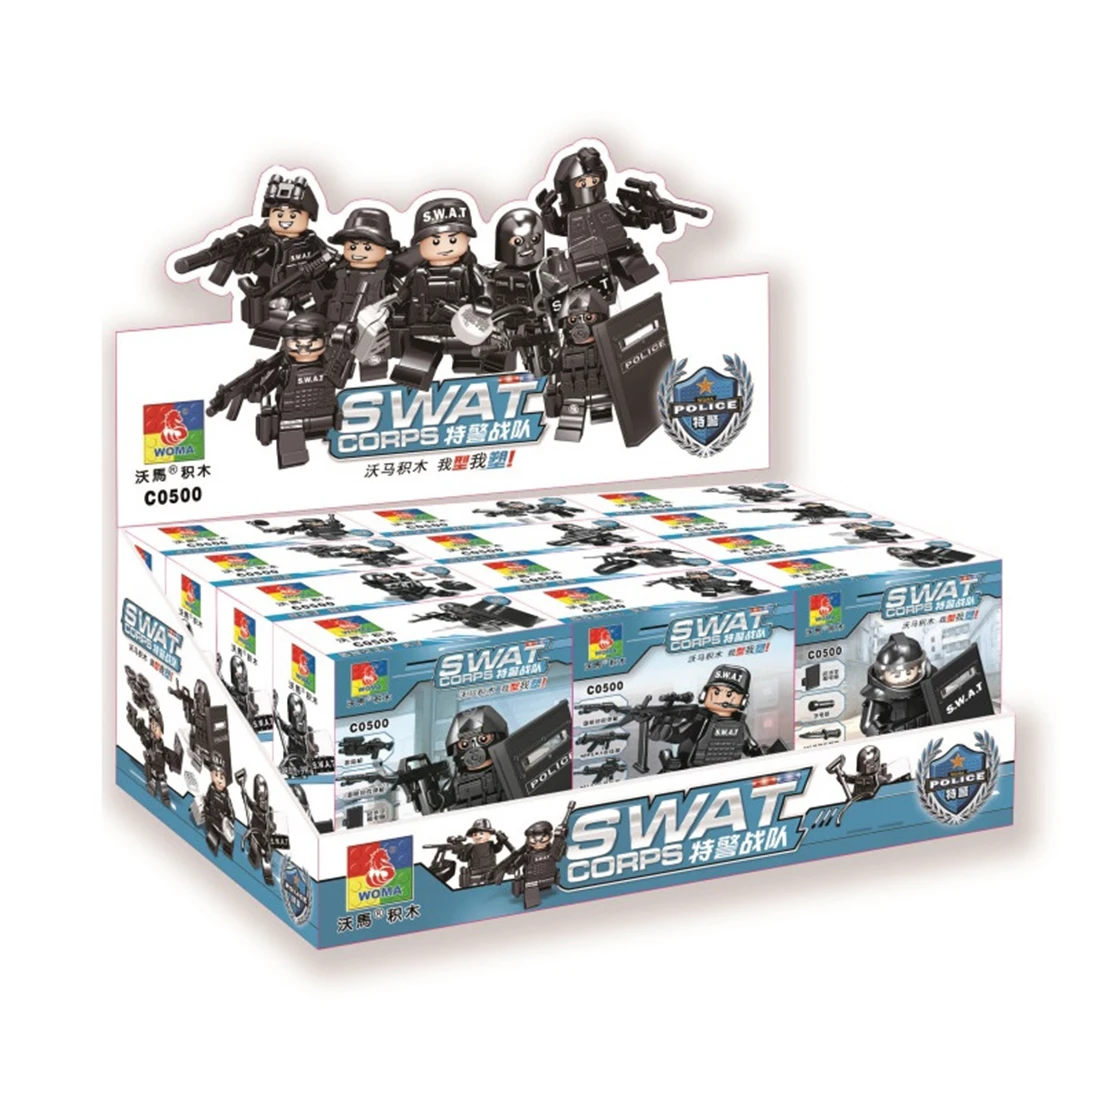 12 типов маленьких частиц DIY головоломки сборки SWAT команда кукла строительный блок игрушки для детей играть семья развлечения наборы